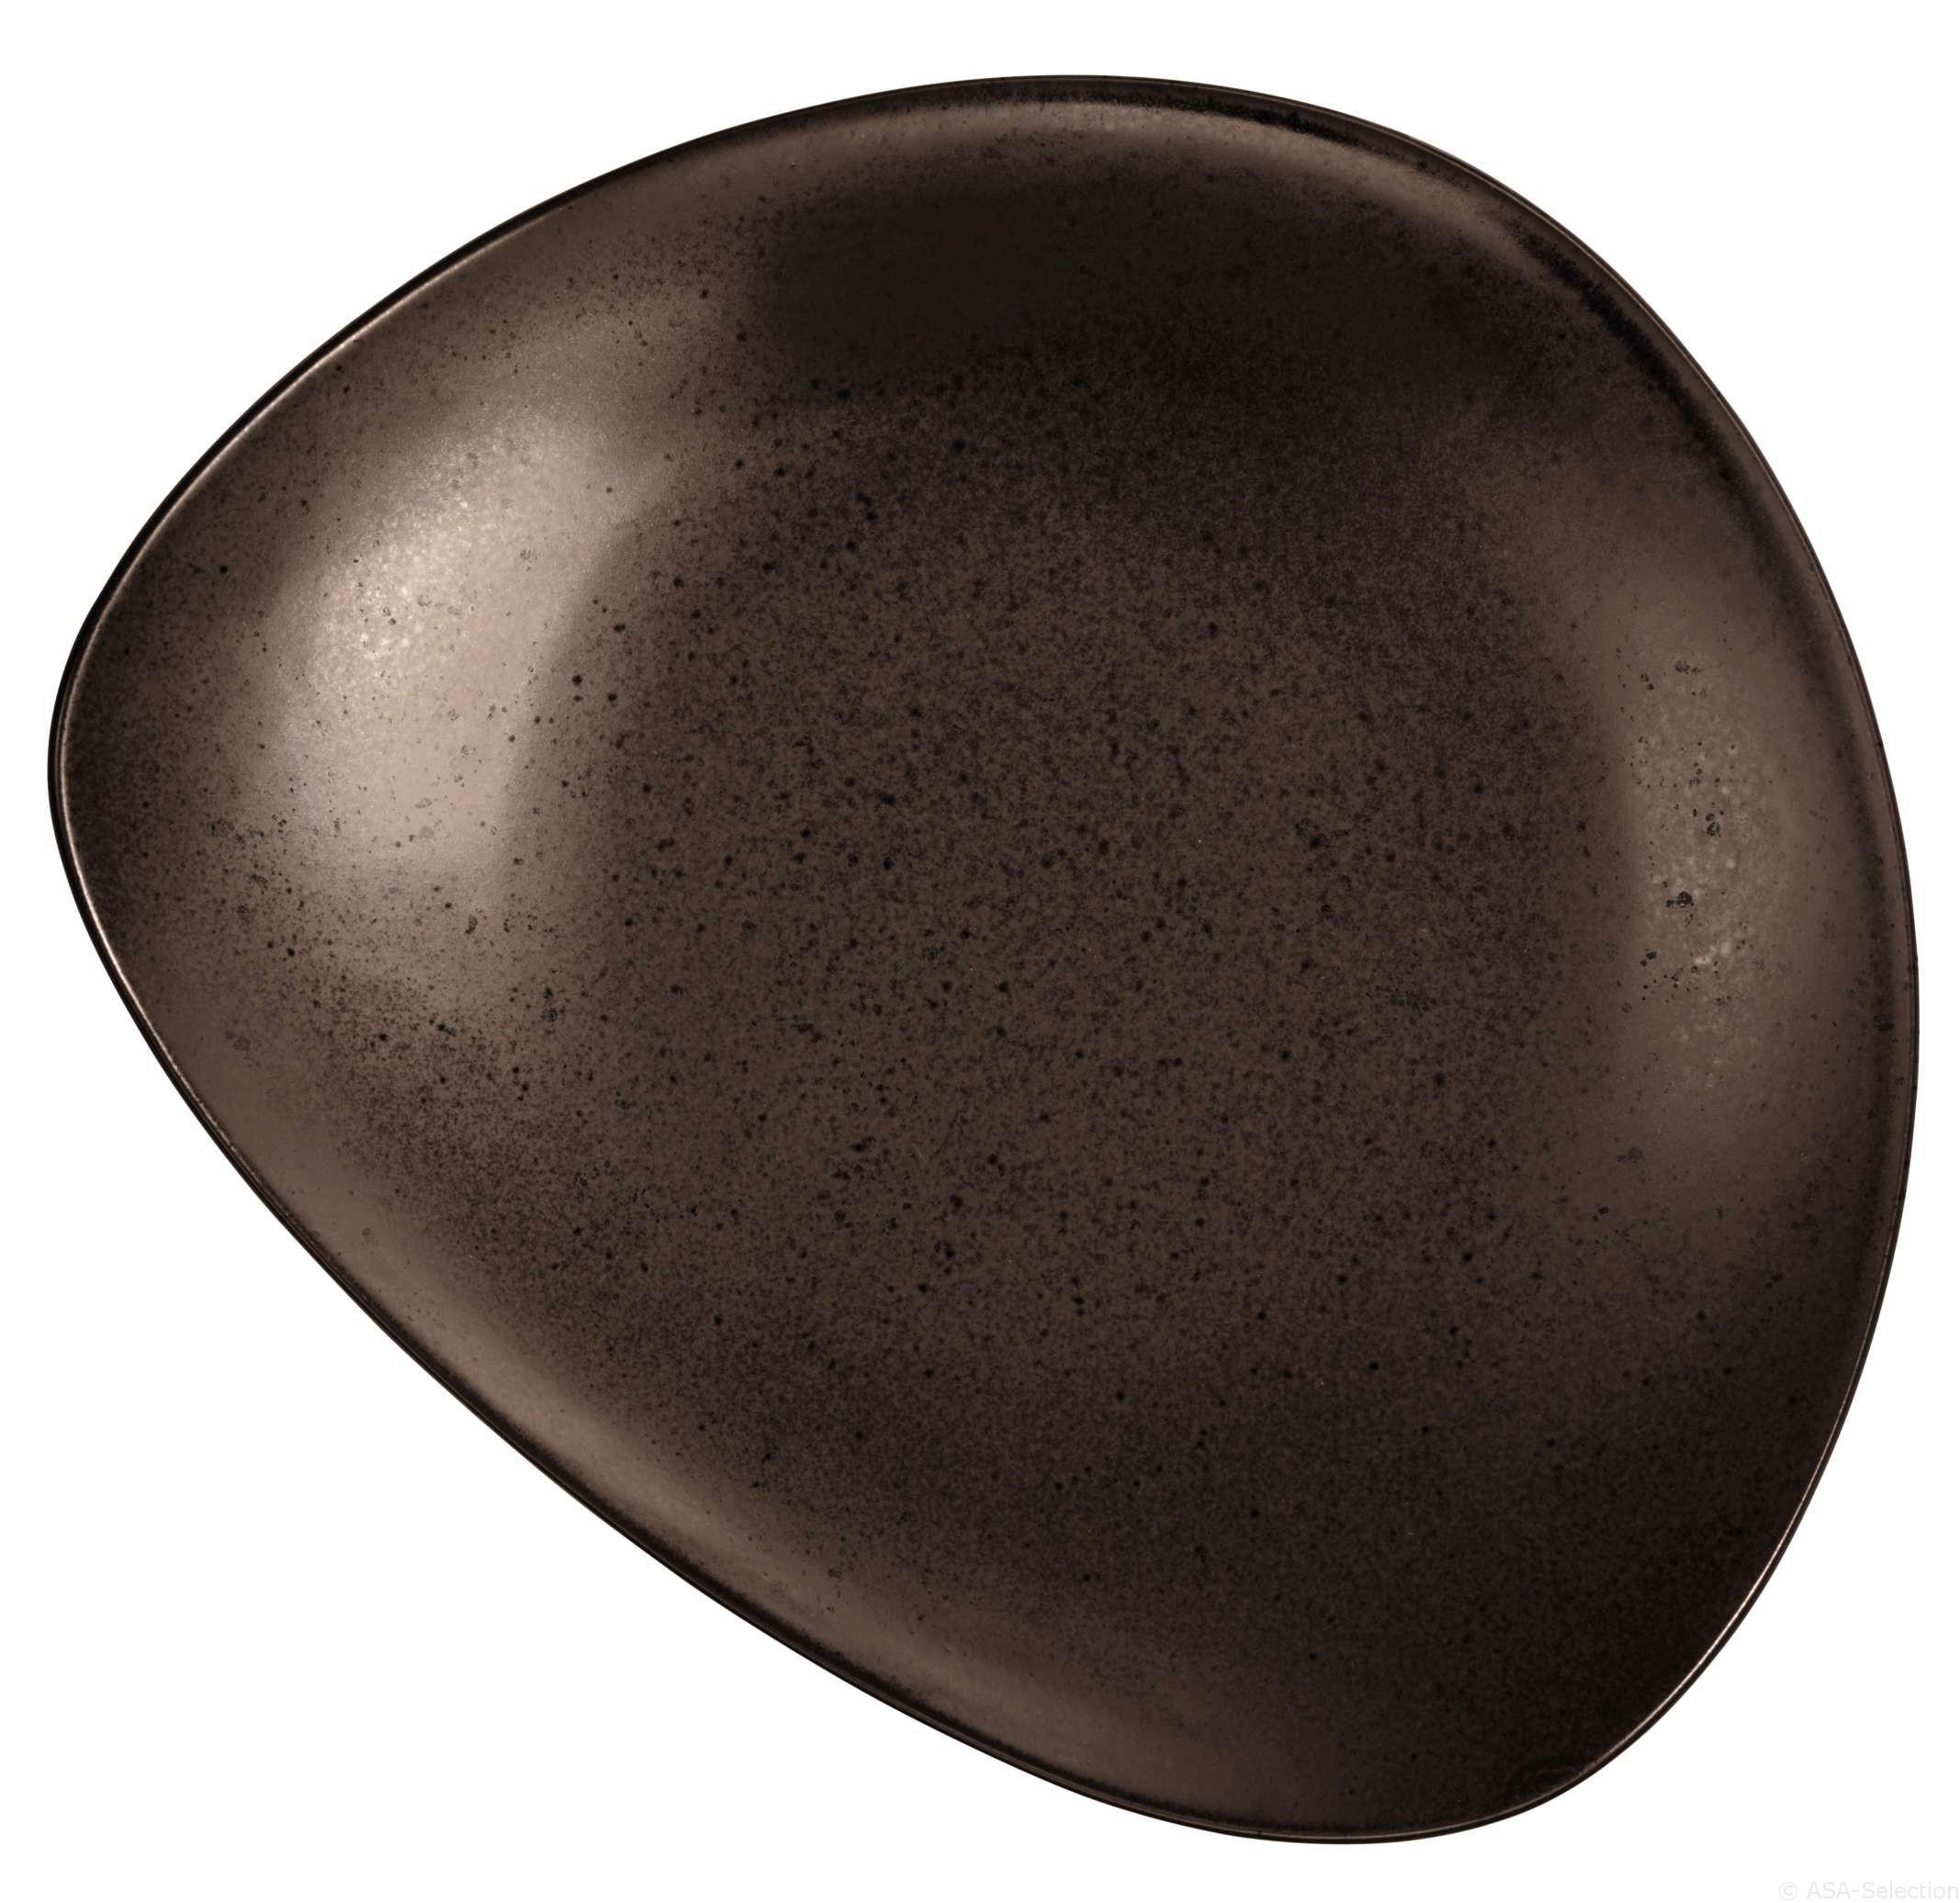 PASTATELLER CUBA MARONE Feinsteinzeug  - Braun, Keramik (27/7cm) - ASA